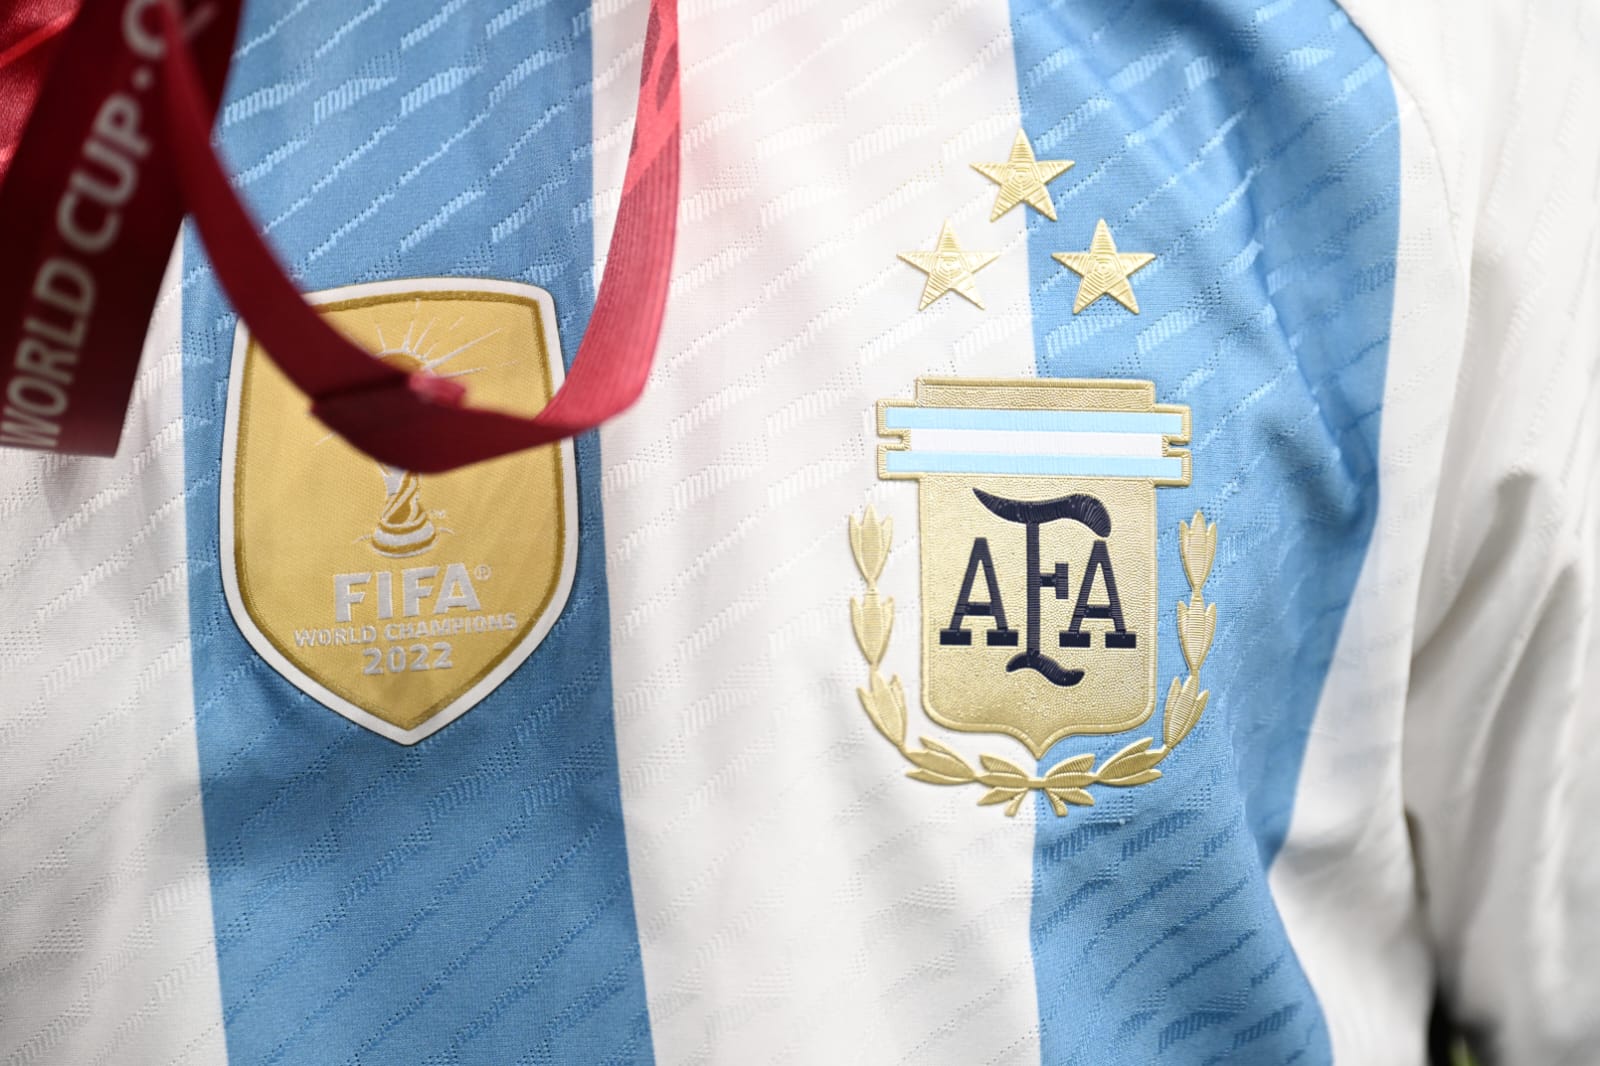 La nueva camiseta de la Selección Argentina con las tres estrellas y el